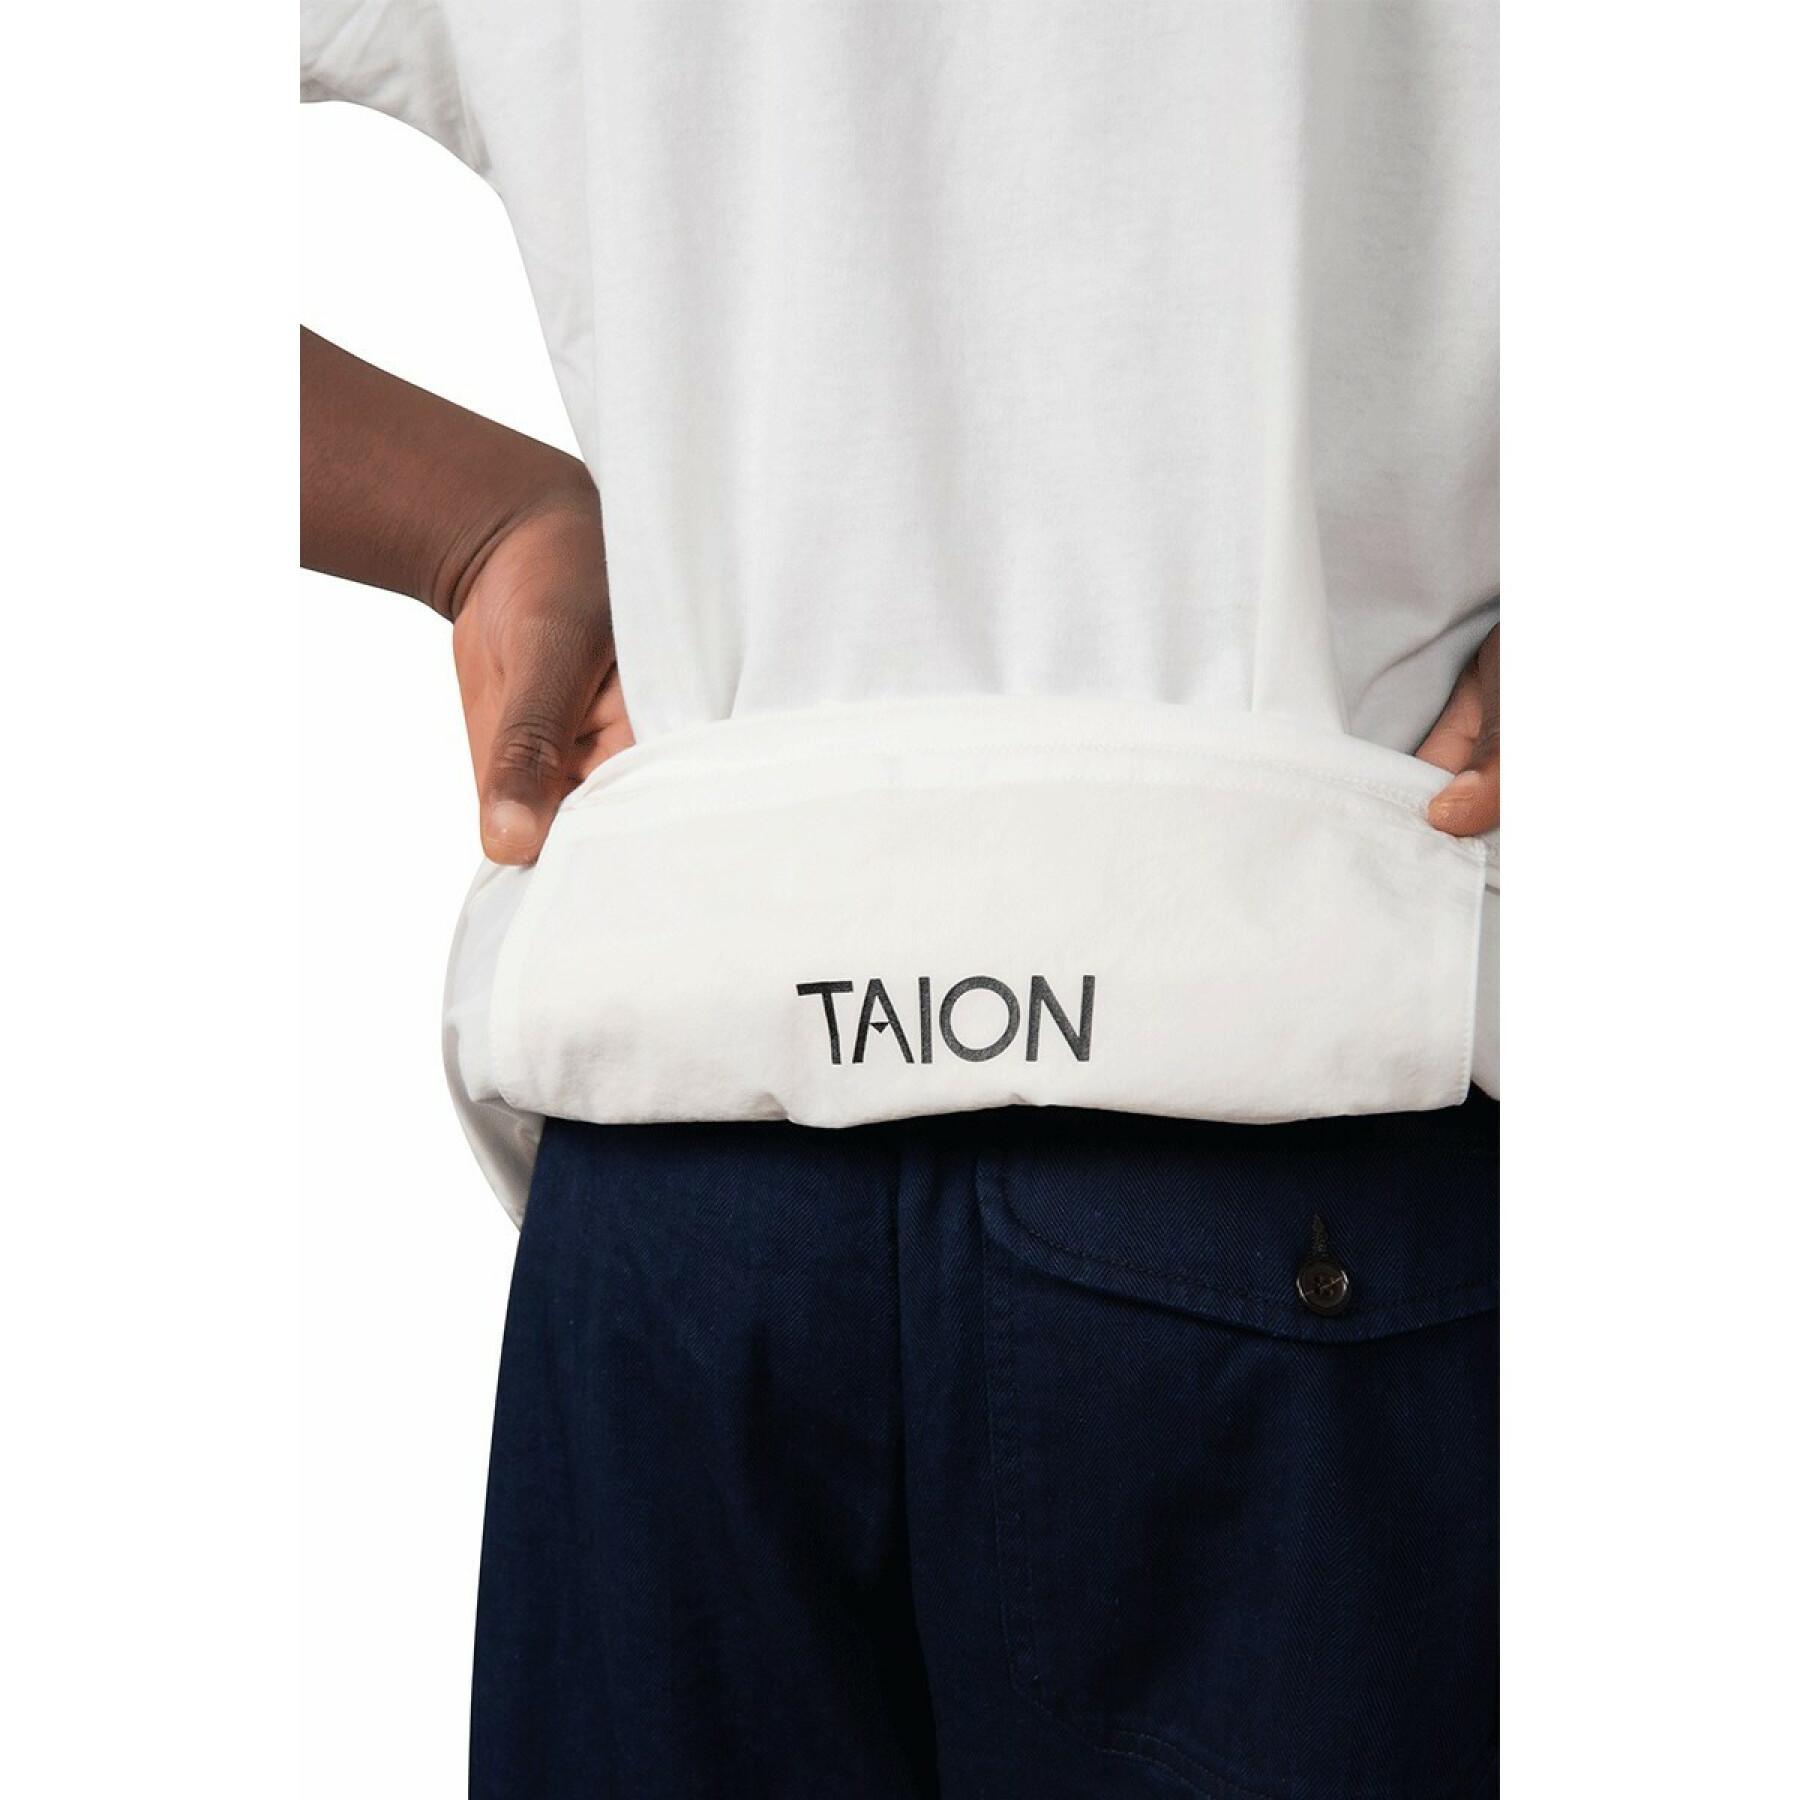 Camiseta Taion Storage